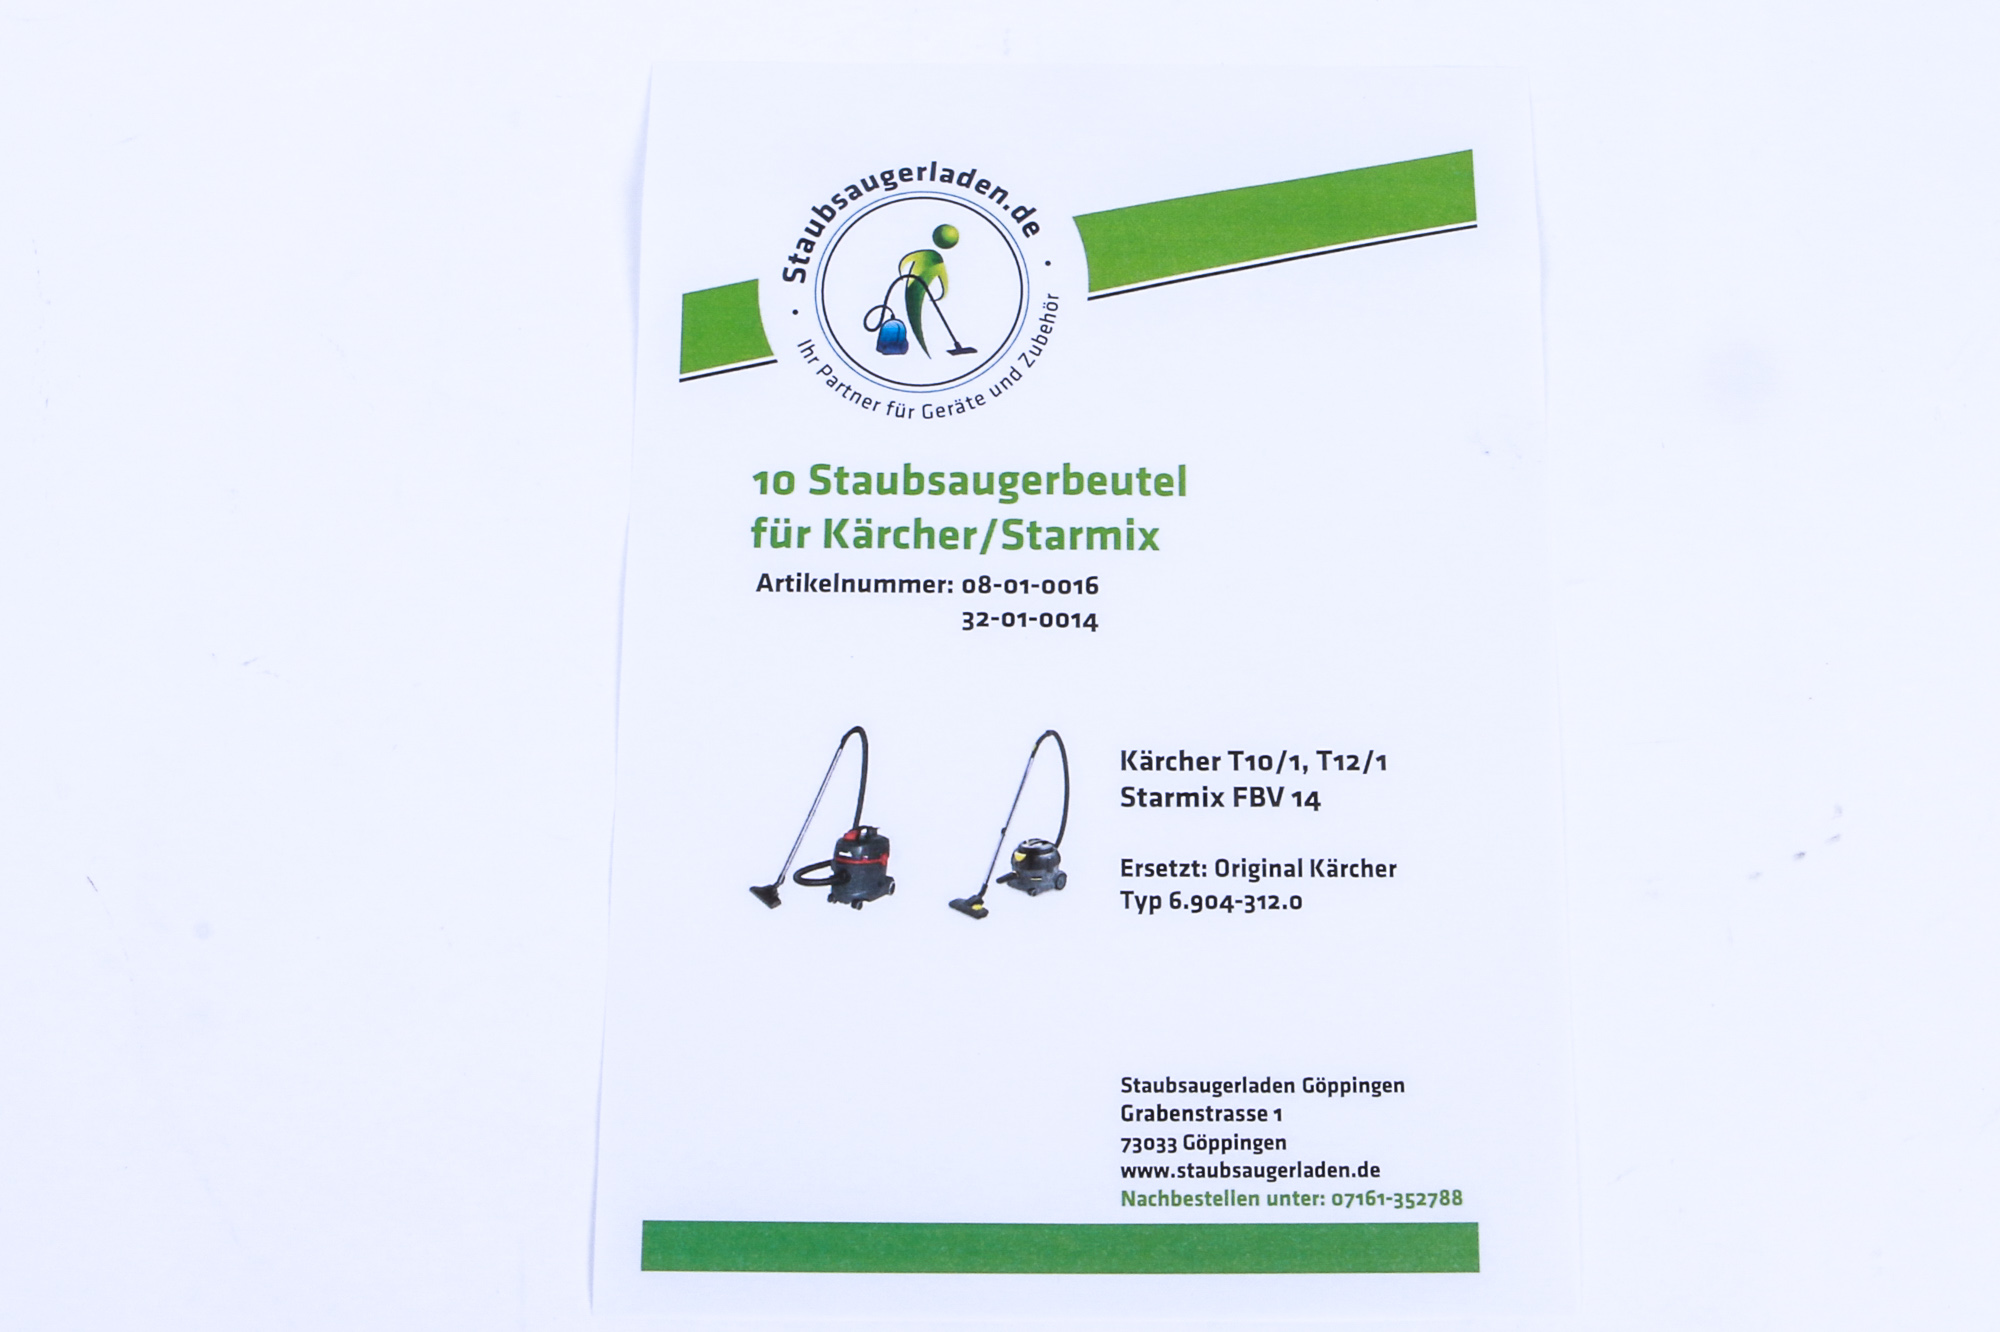 STAUBSAUGERLADEN.DE 10 Staubbeutel passend für Staubsaugerbeutel 14 und Starmix Kärcher FBV 12/1 T